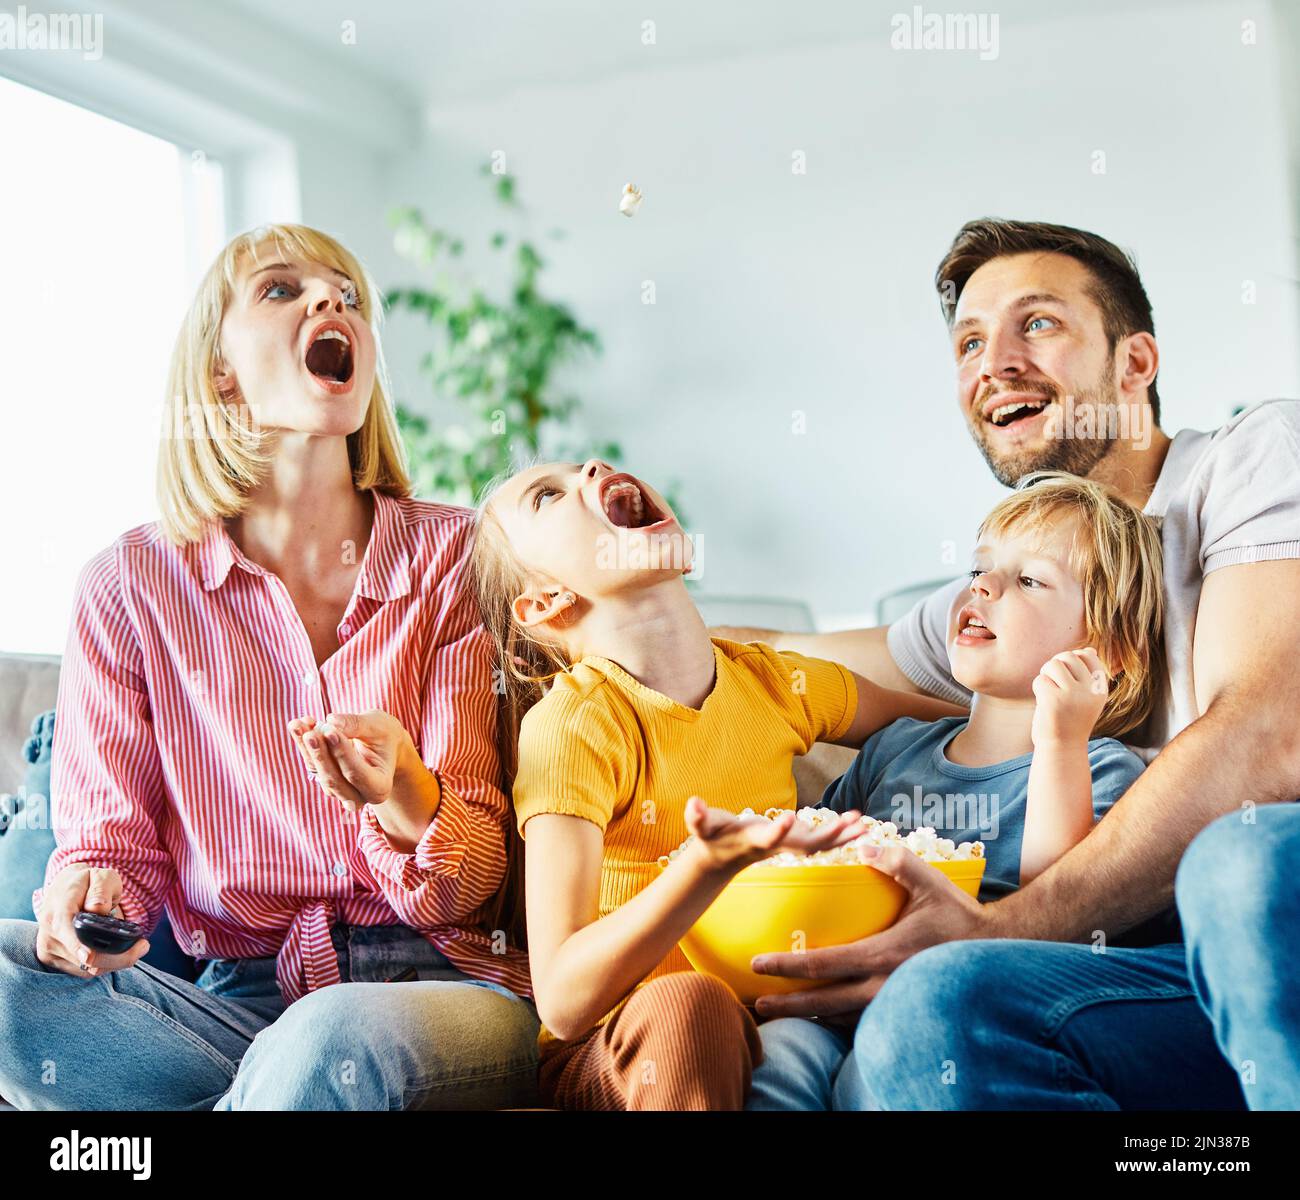 Familia divirtiéndose viendo la televisión y comiendo jugando con palomitas en el sofá de la casa Foto de stock